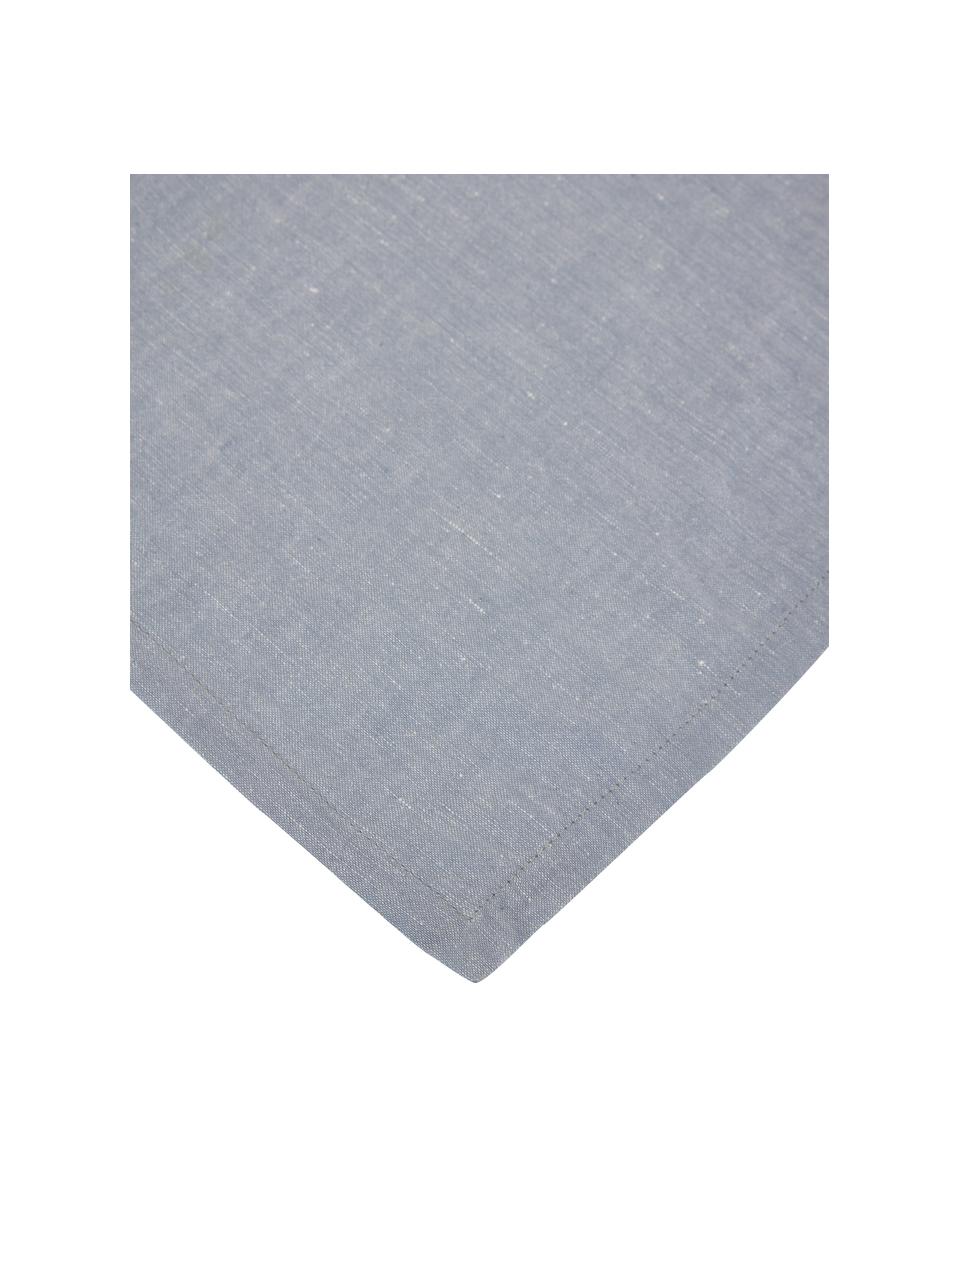 Serviette de table coton/lin bleu ciel Abinadi, 2 pièces, 50 % coton, 50 % lin, Bleu ciel, larg. 42 x long. 42 cm